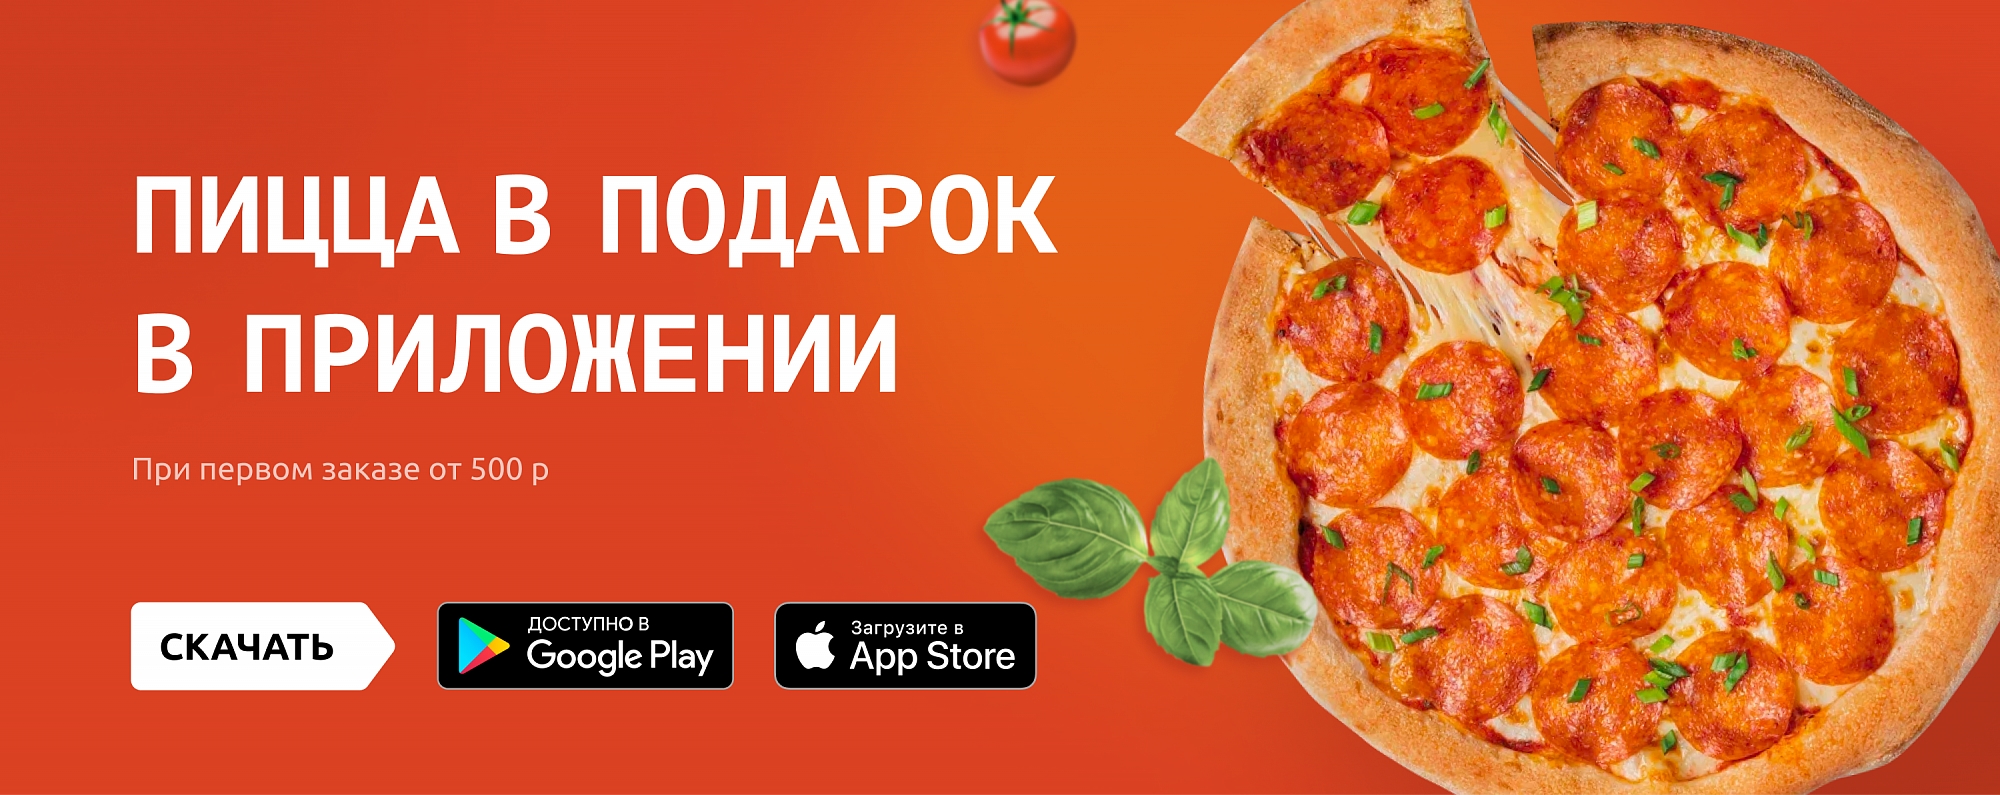 Бесплатная пицца при первом заказе через приложение